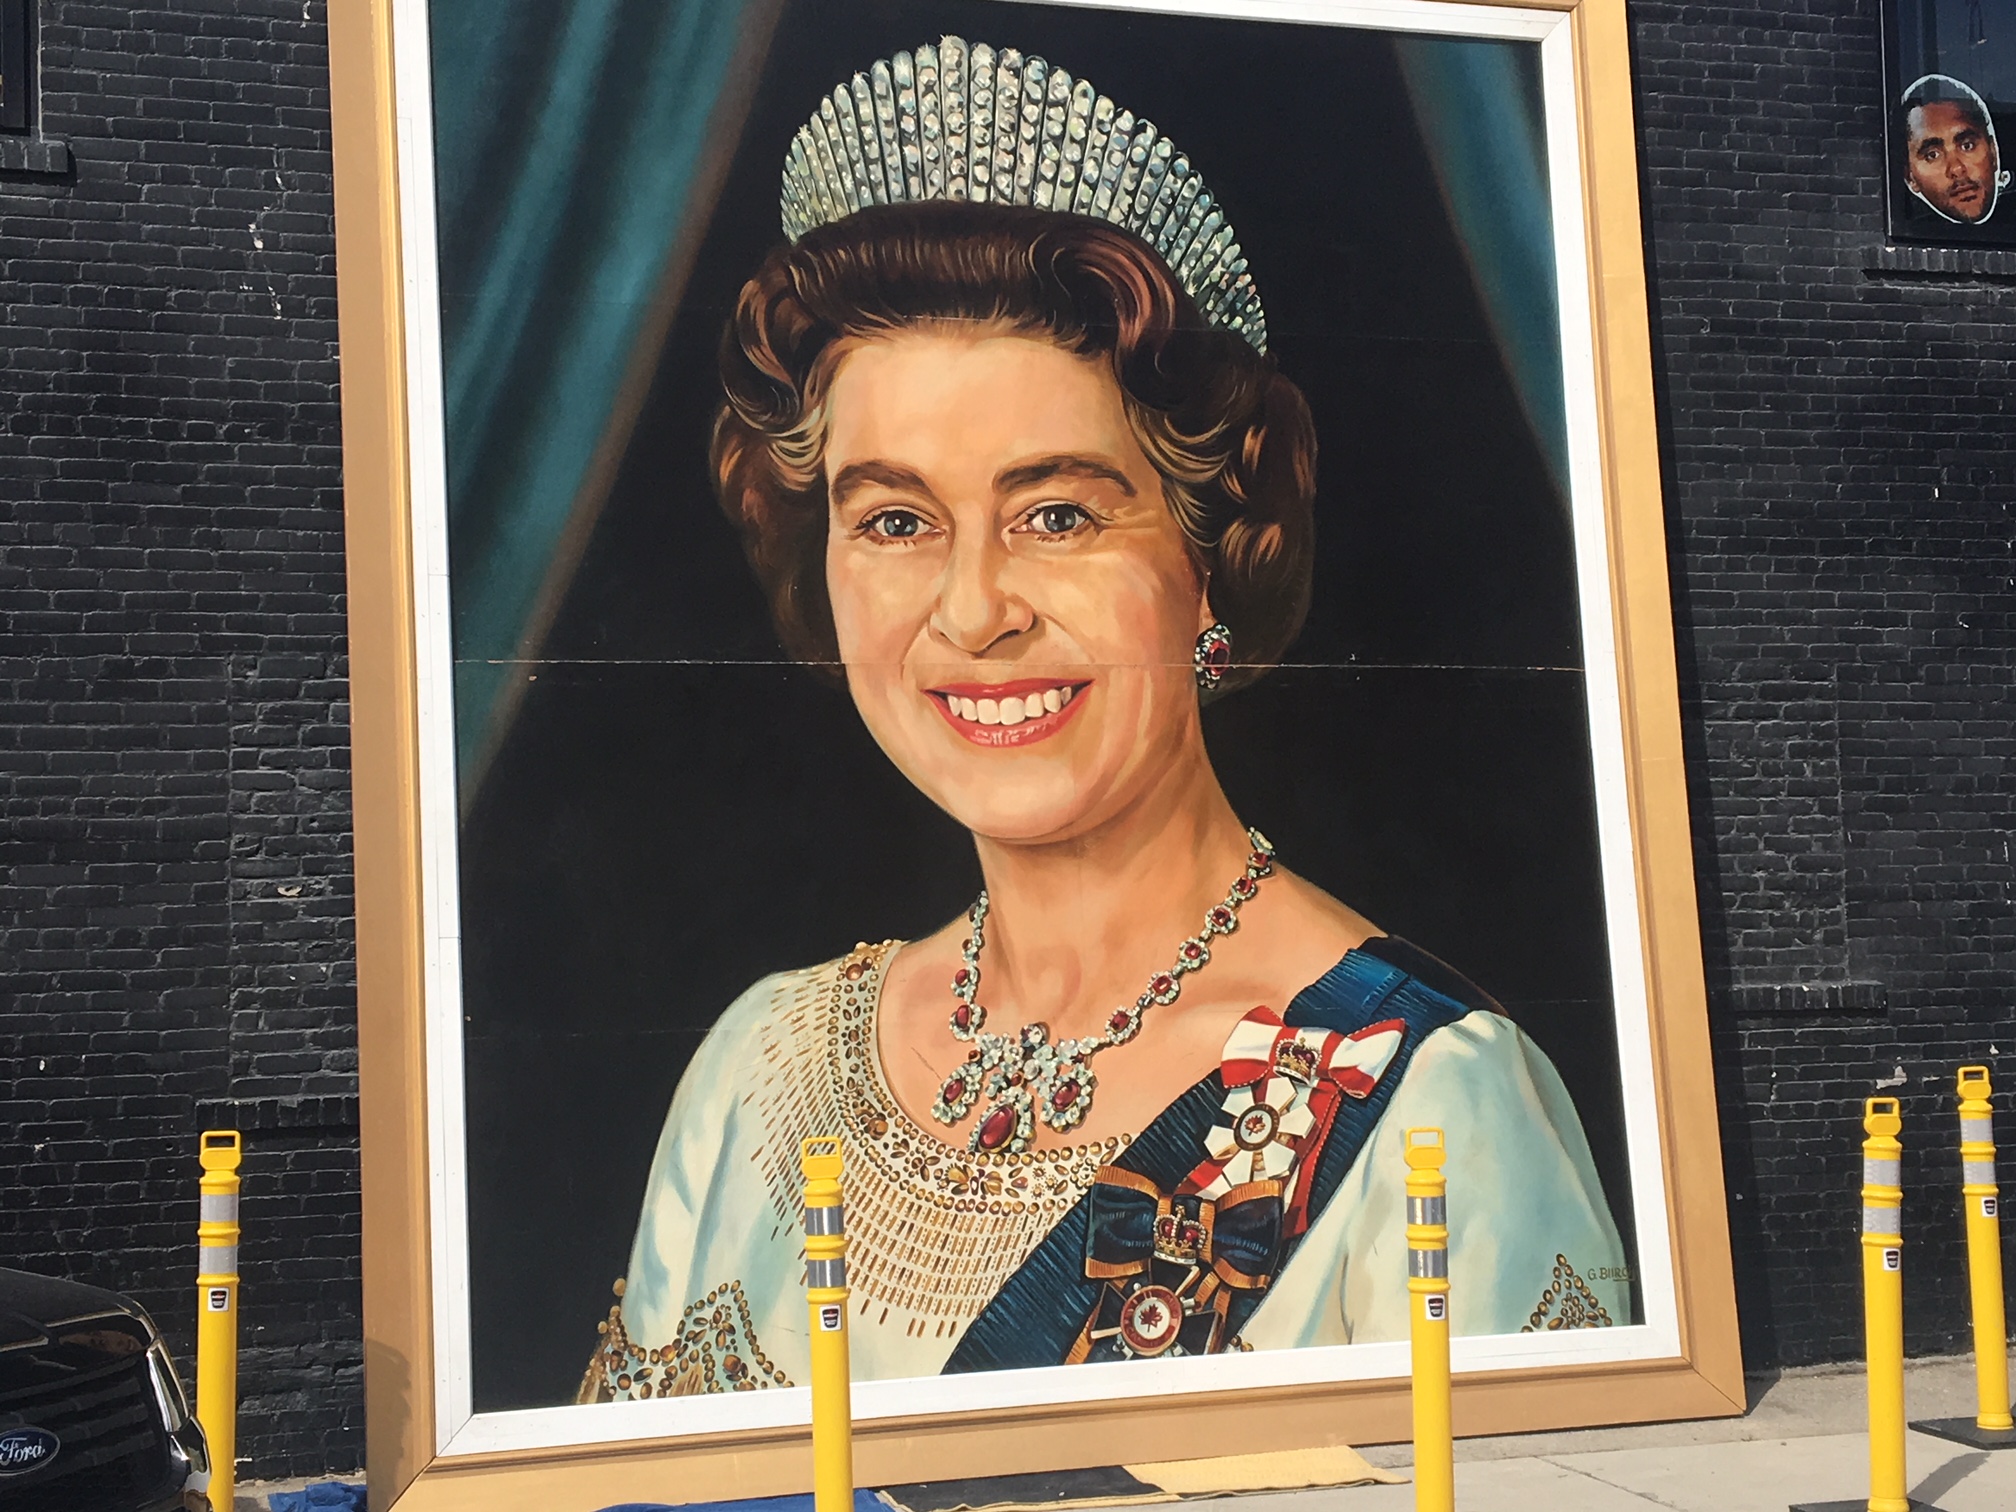  Ce portrait plus grand que nature de la Reine a été sorti de sa cachette au pub Pint de la rue Garry mercredi à temps pour le Voile blanc de Winnipeg.